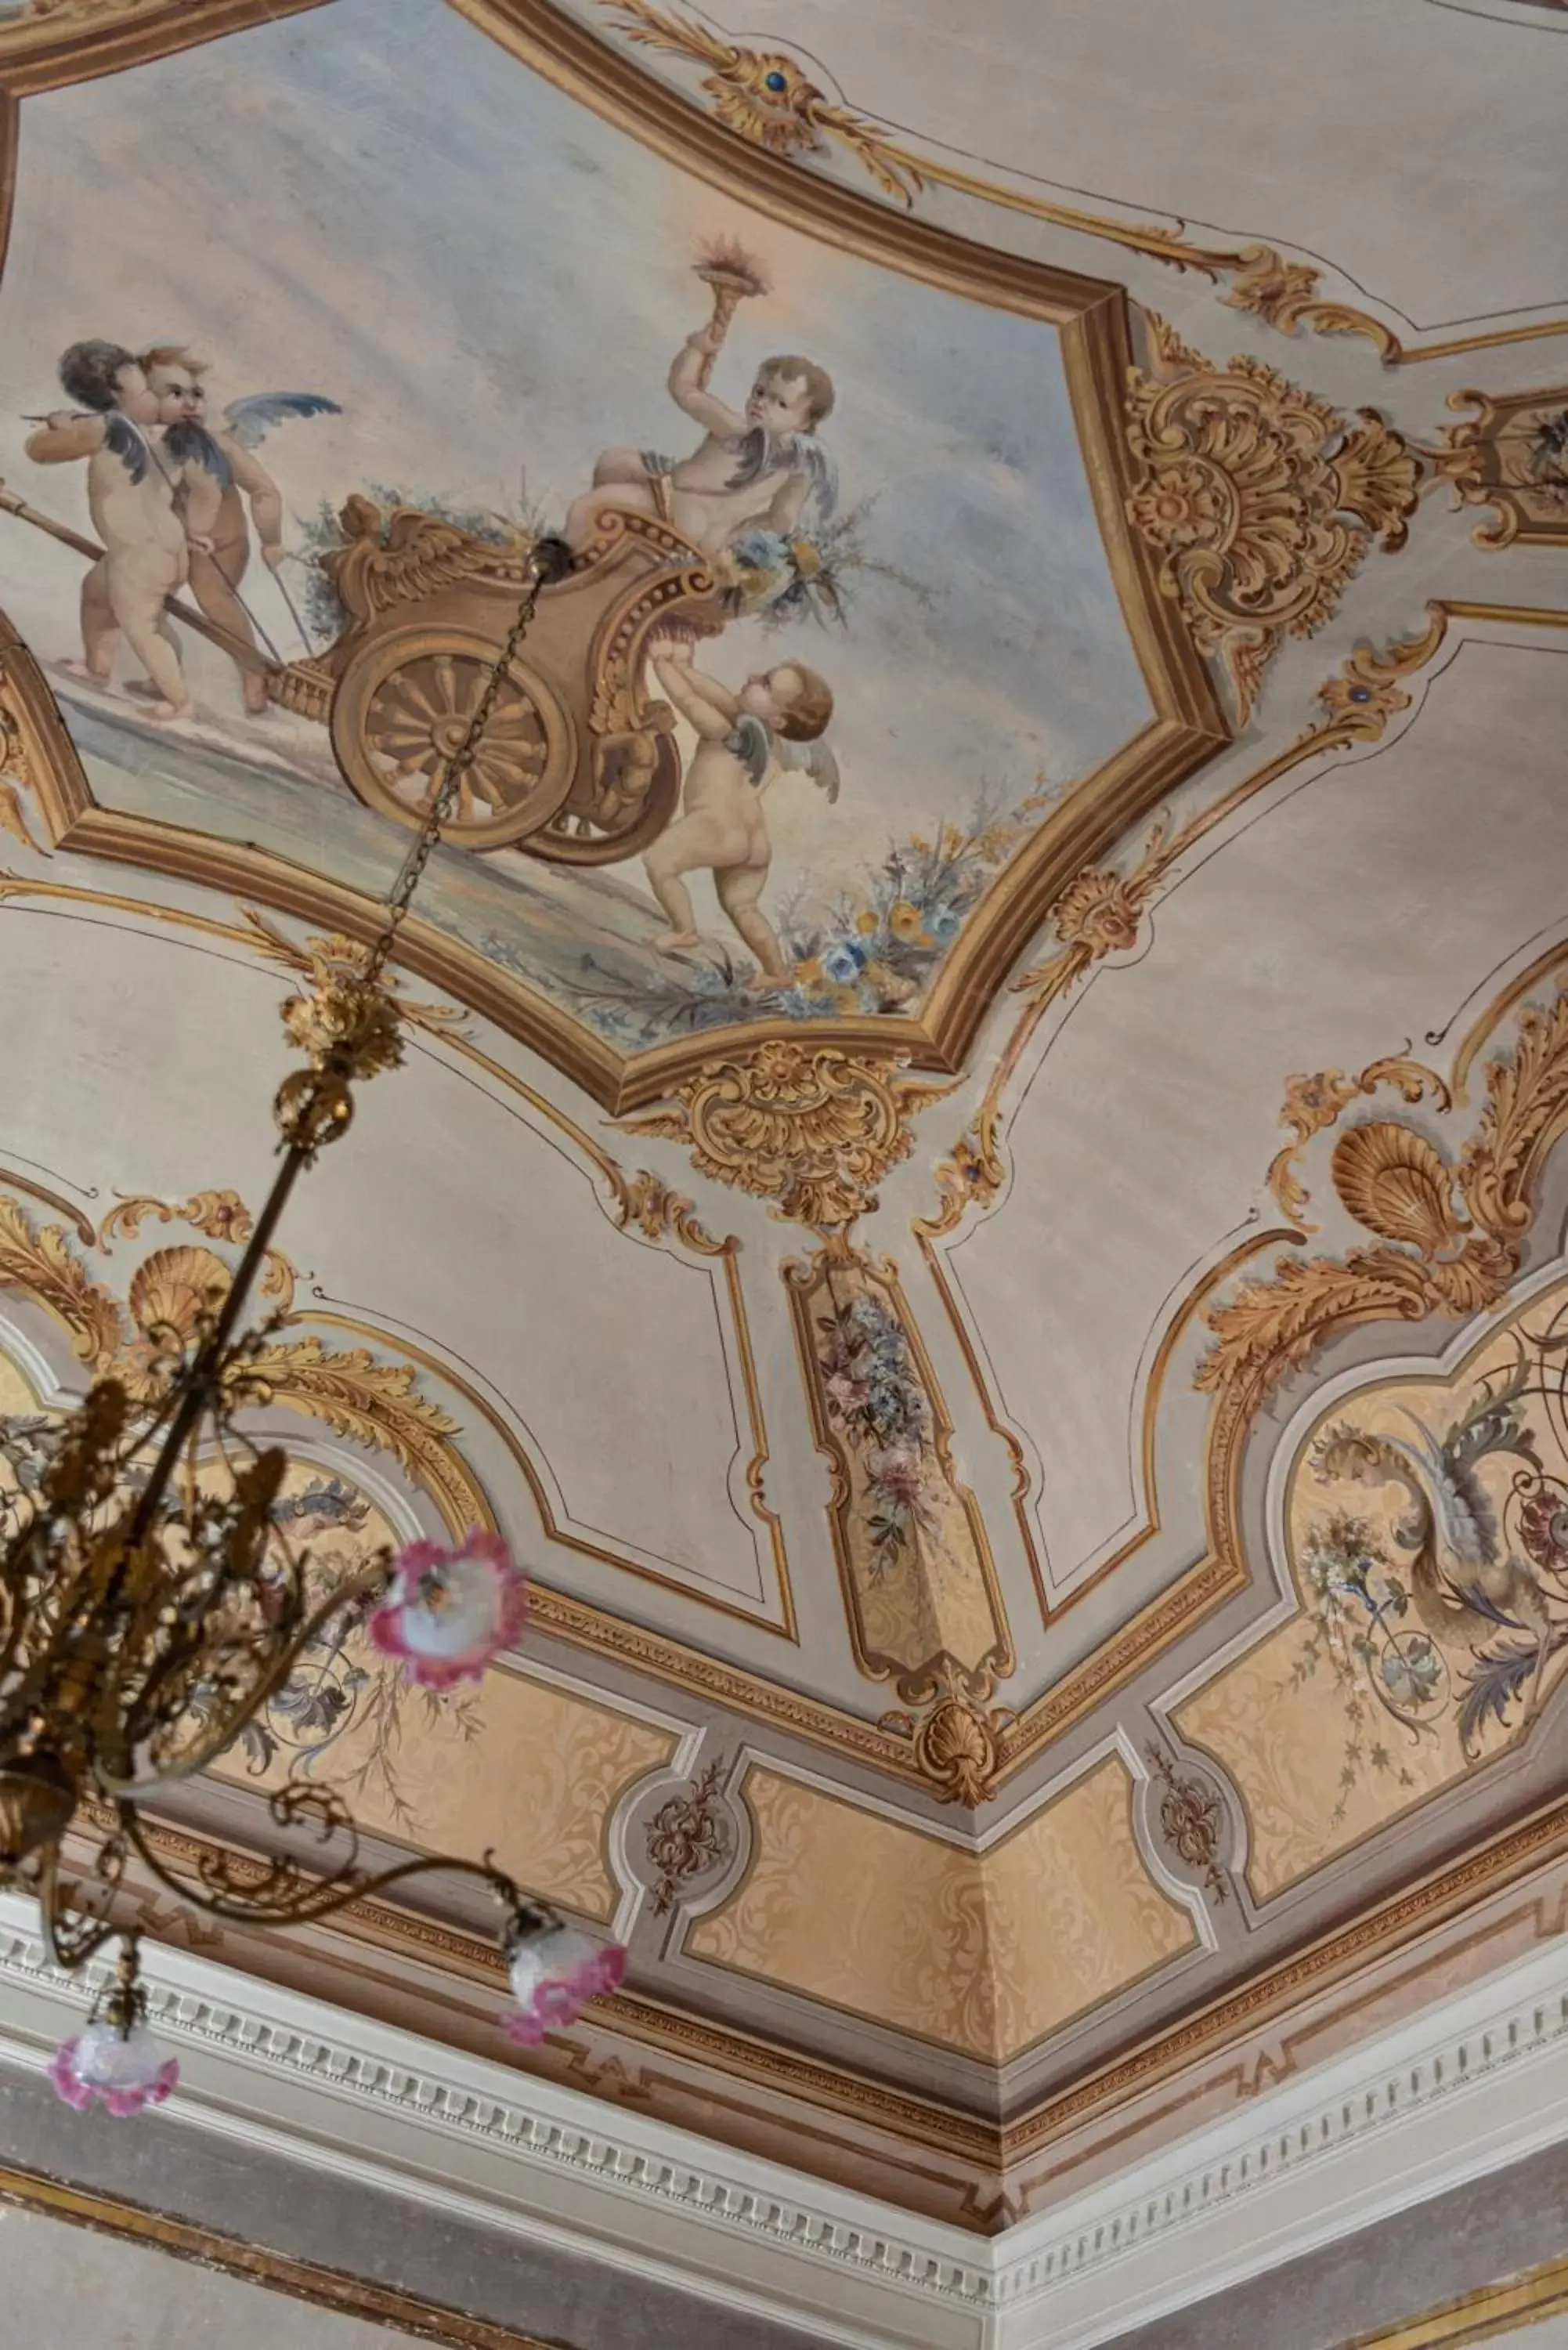 Decorative detail in Palazzo Donna Elisabetta